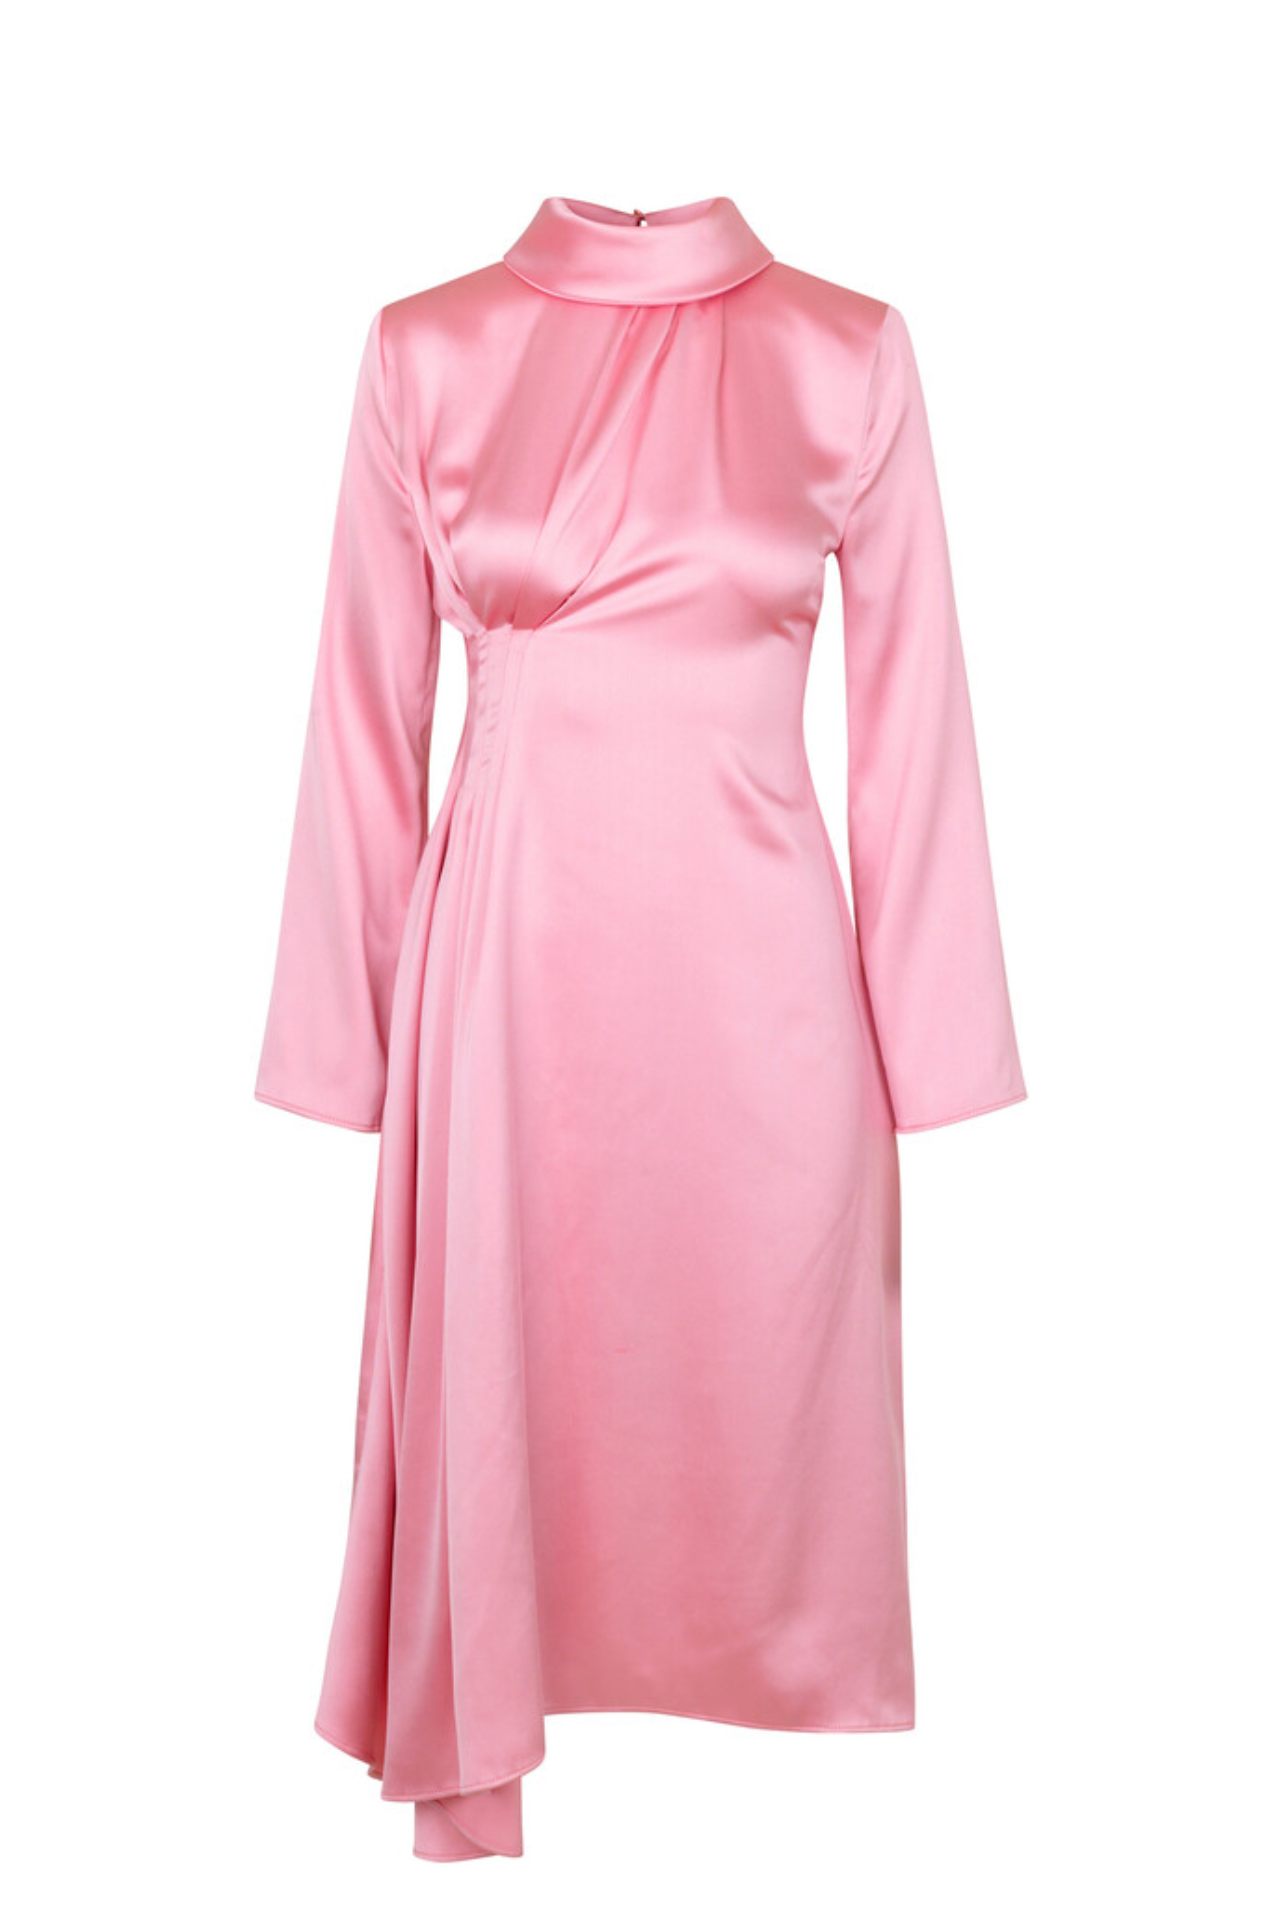 Pink silky maxi dress, Size L